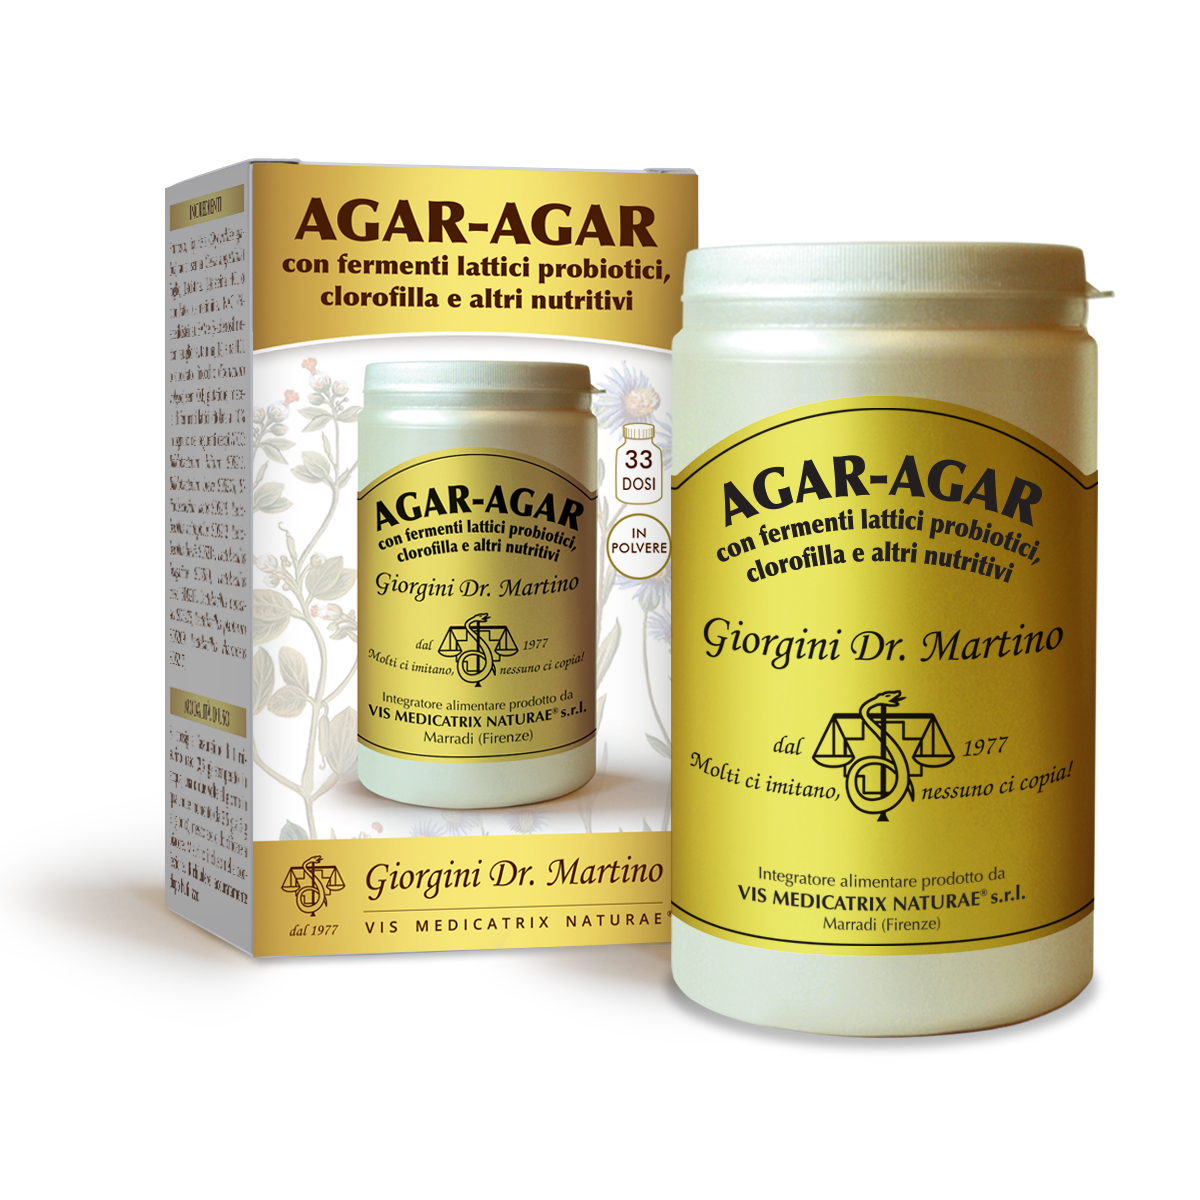 AGAR-AGAR con fermenti lattici e clorofilla